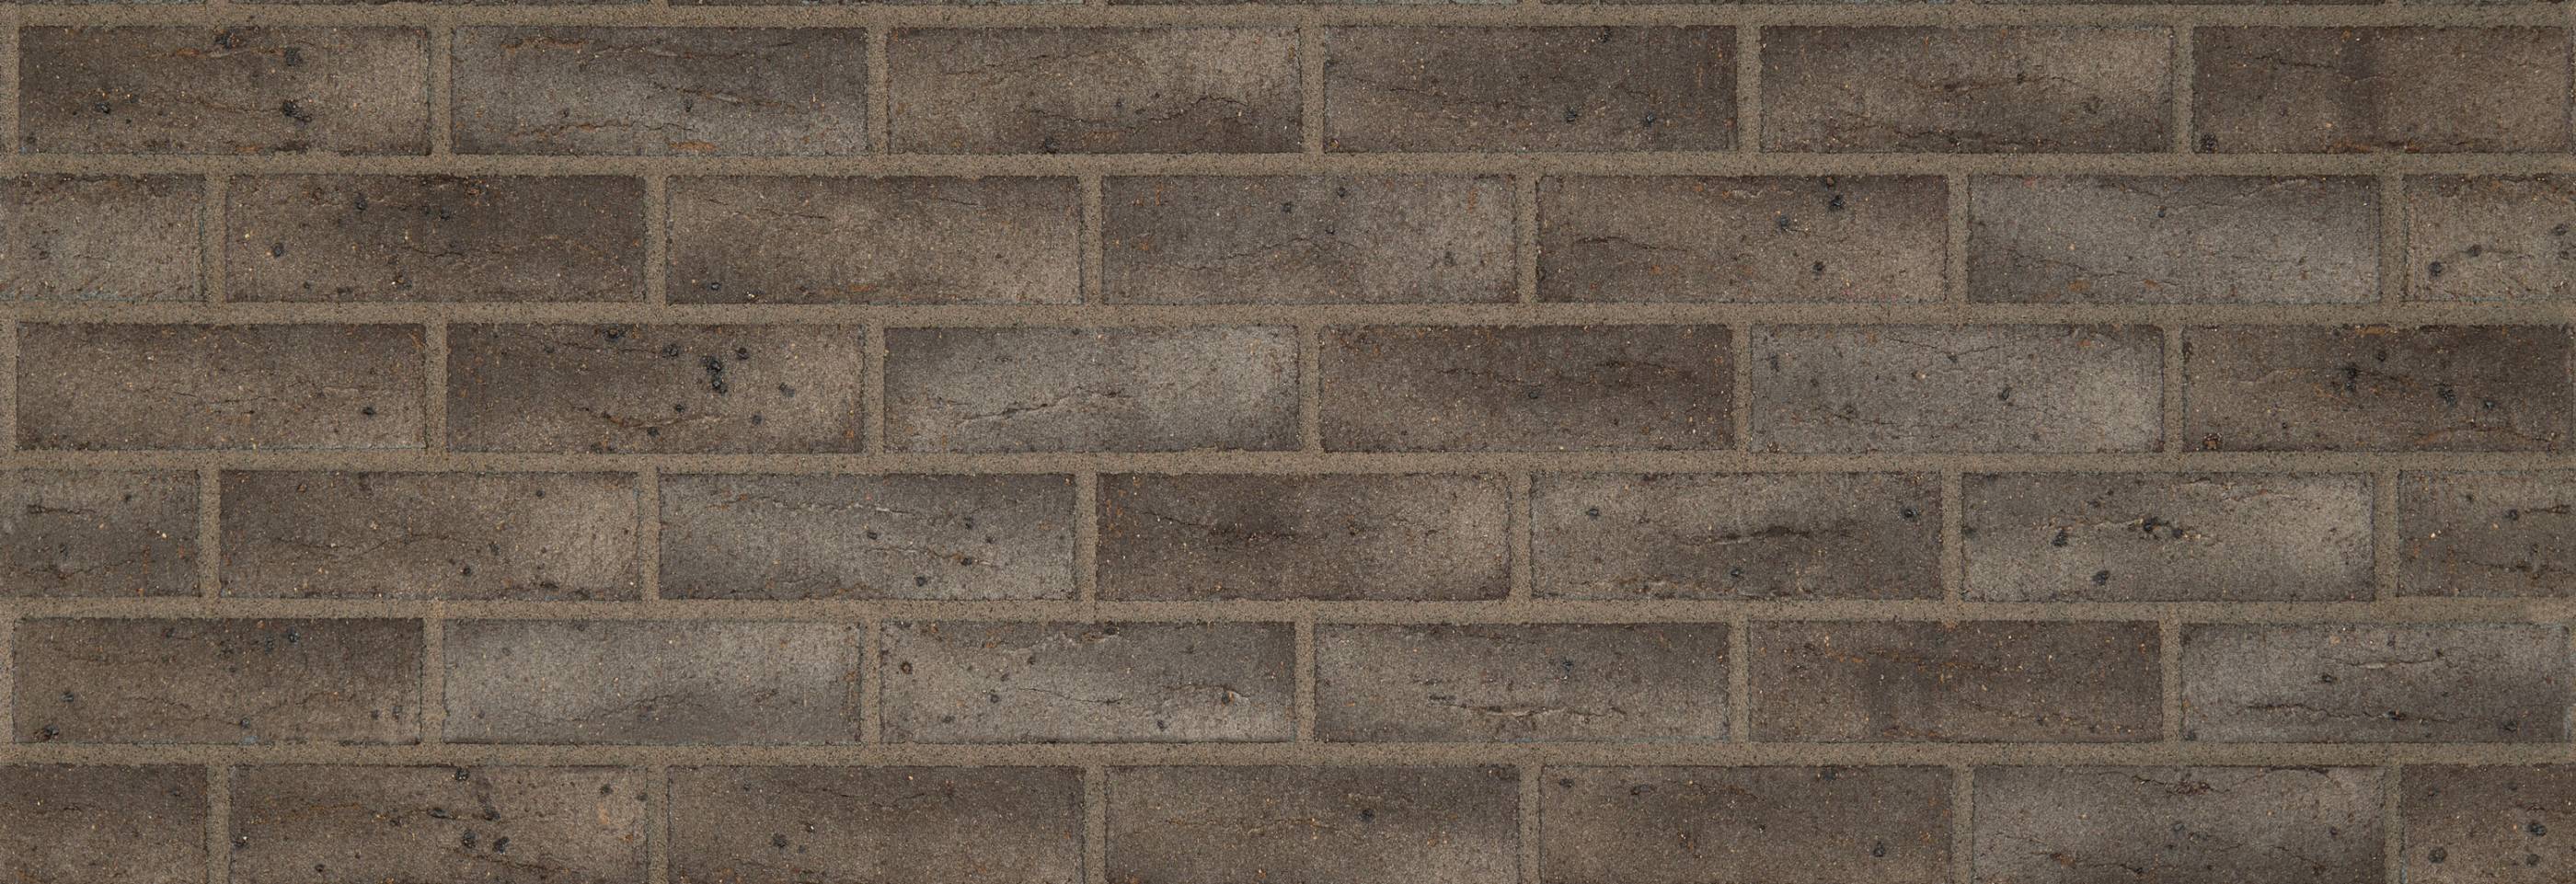 Blockleys Bowland Grey Clay Brick